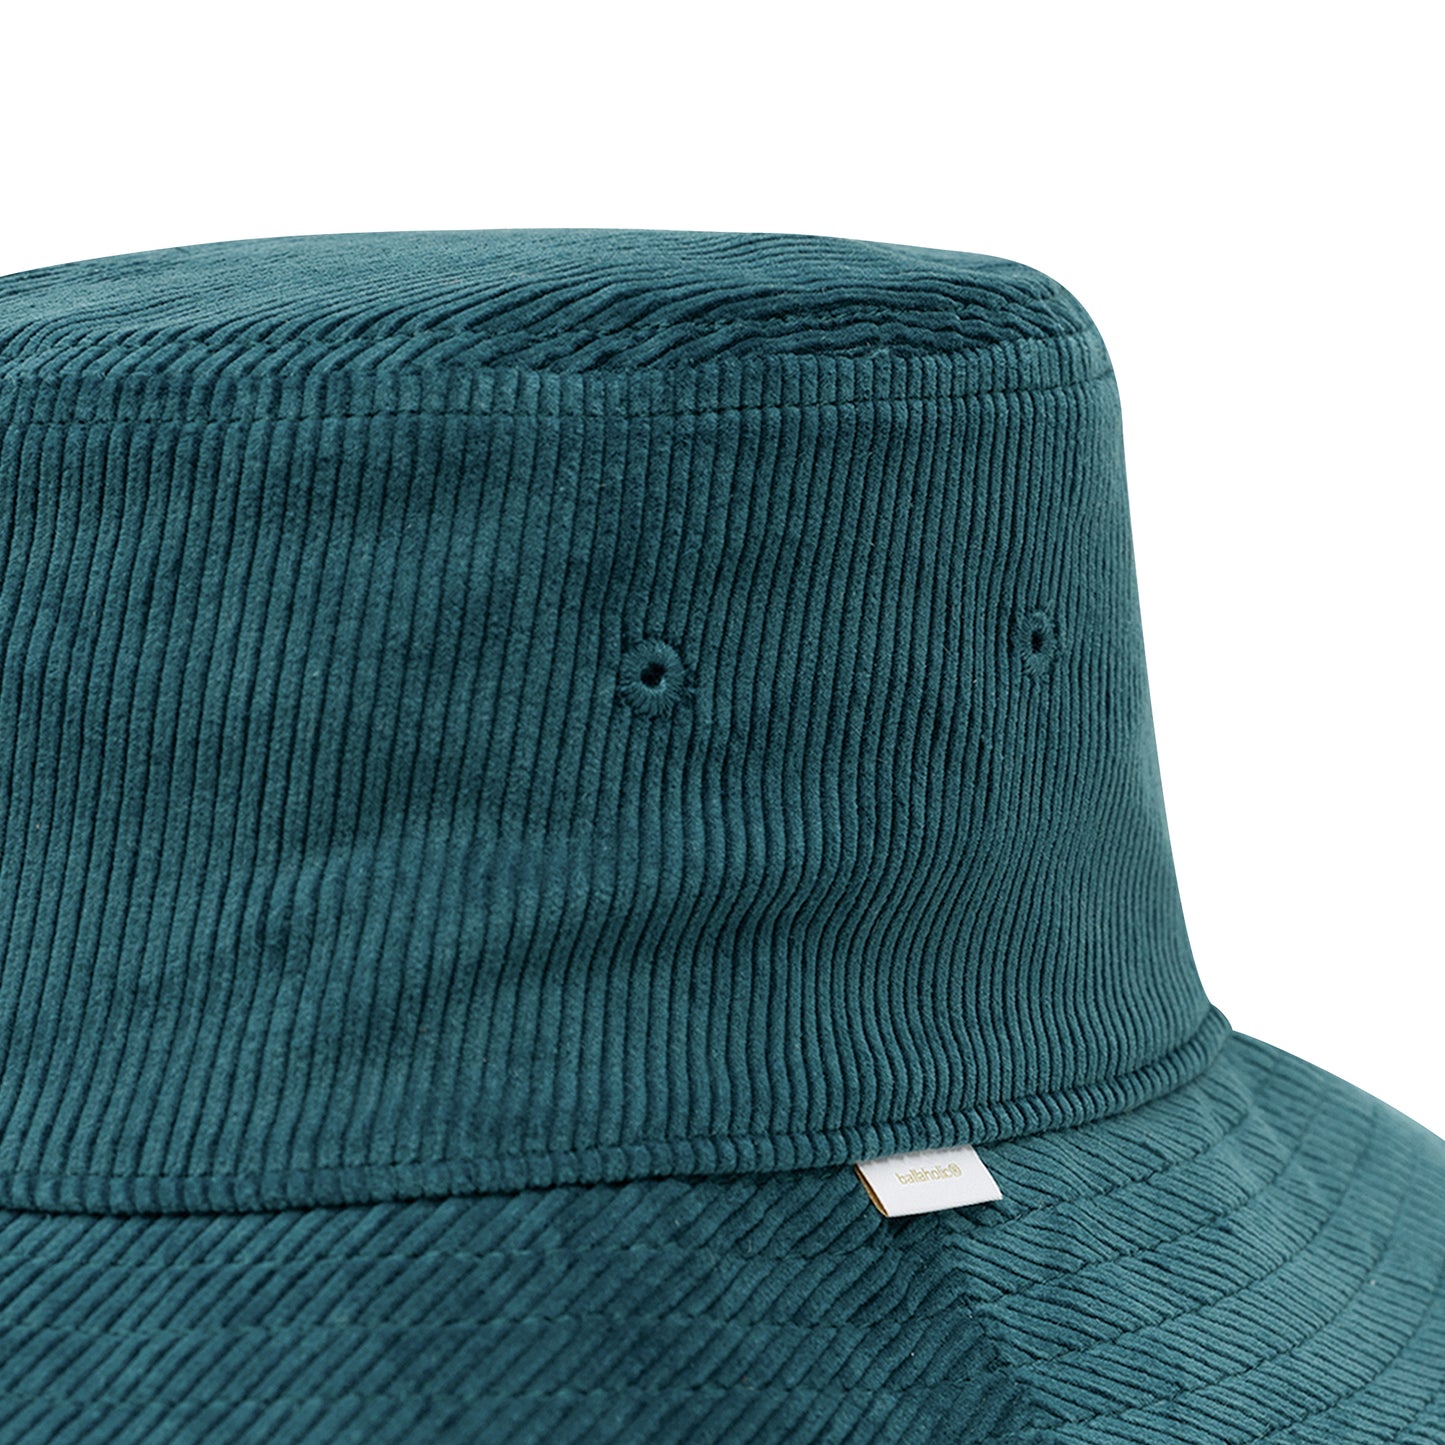 Corduroy Bucket Hat (turquoise)